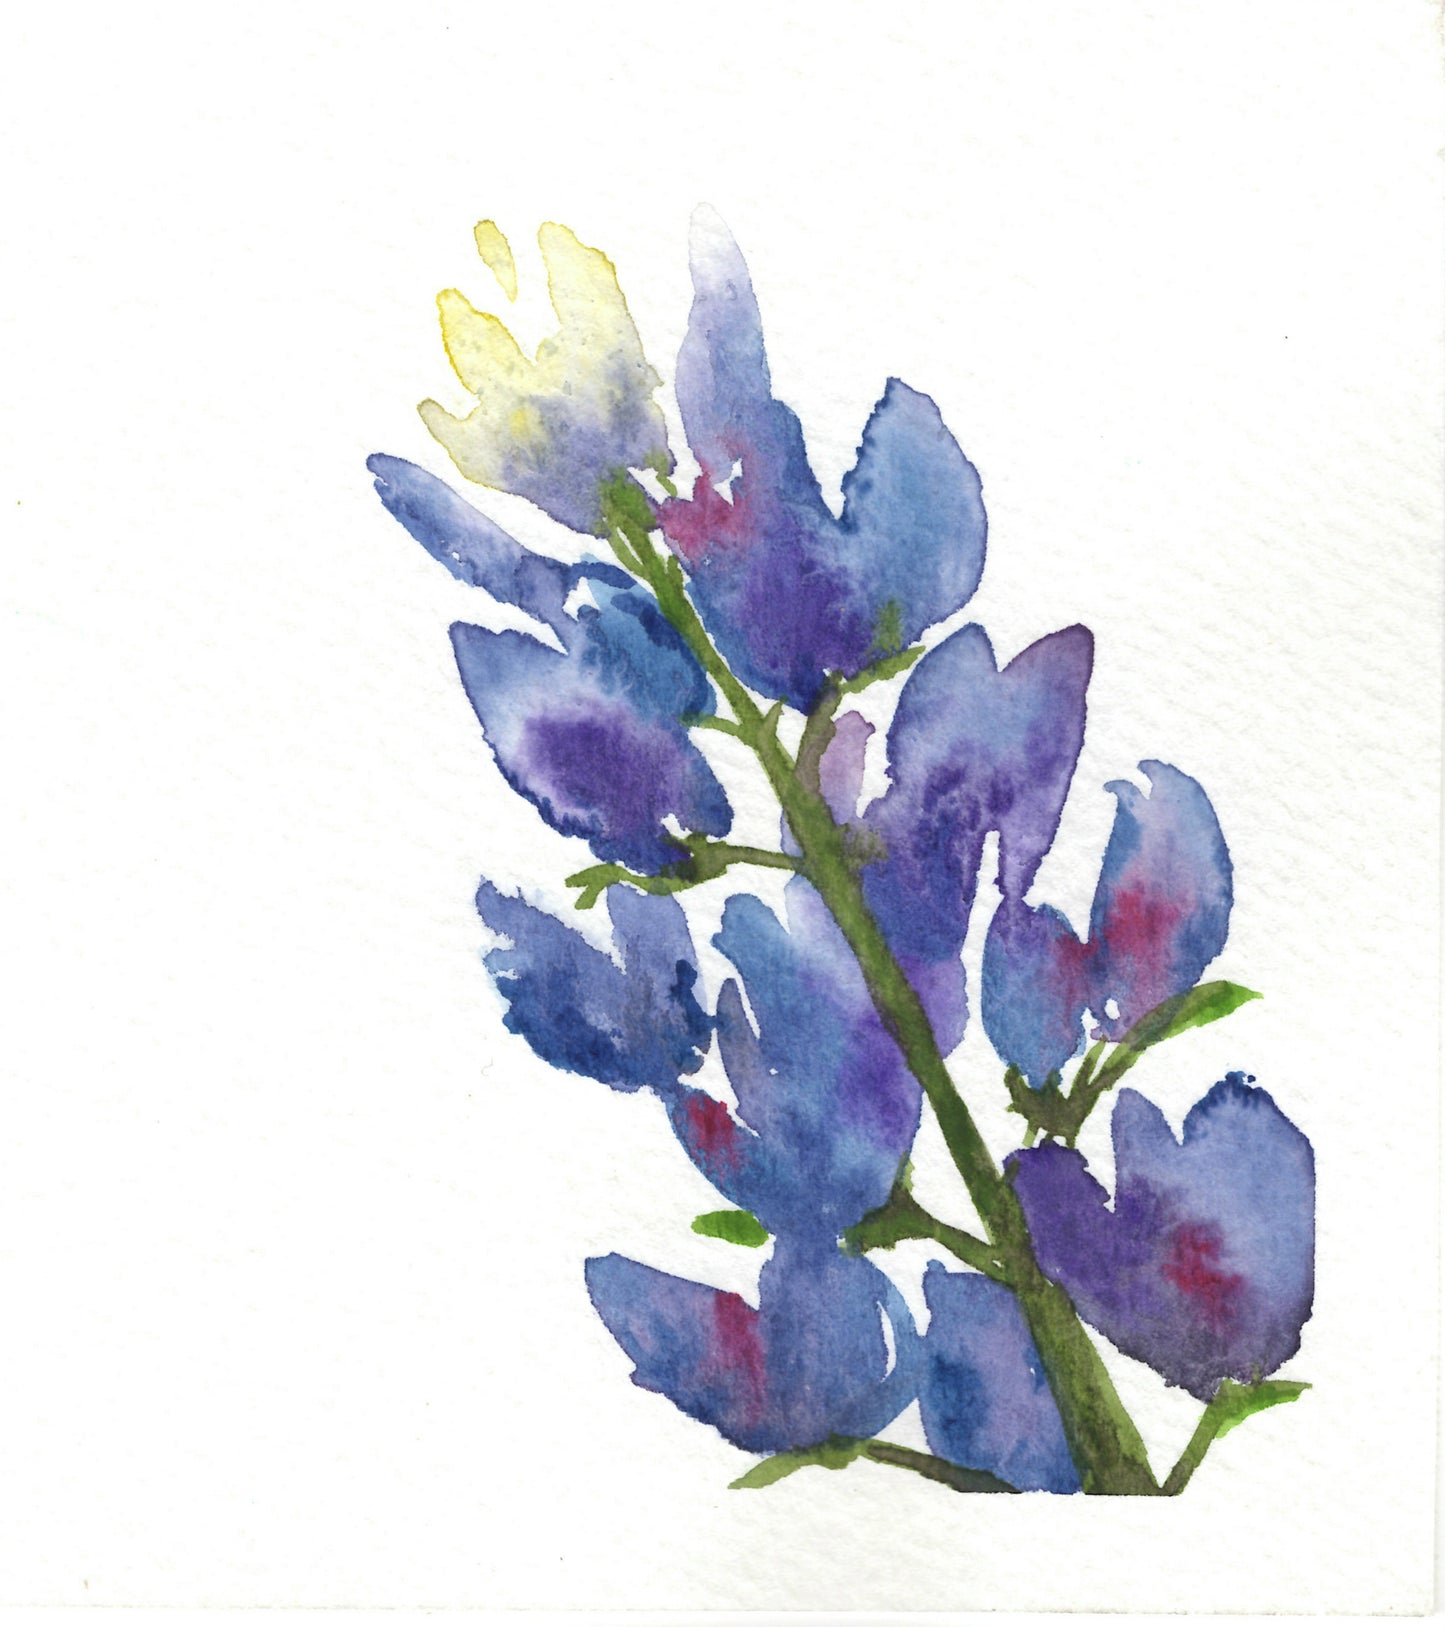 Bluebonnet Wildflower Notecard